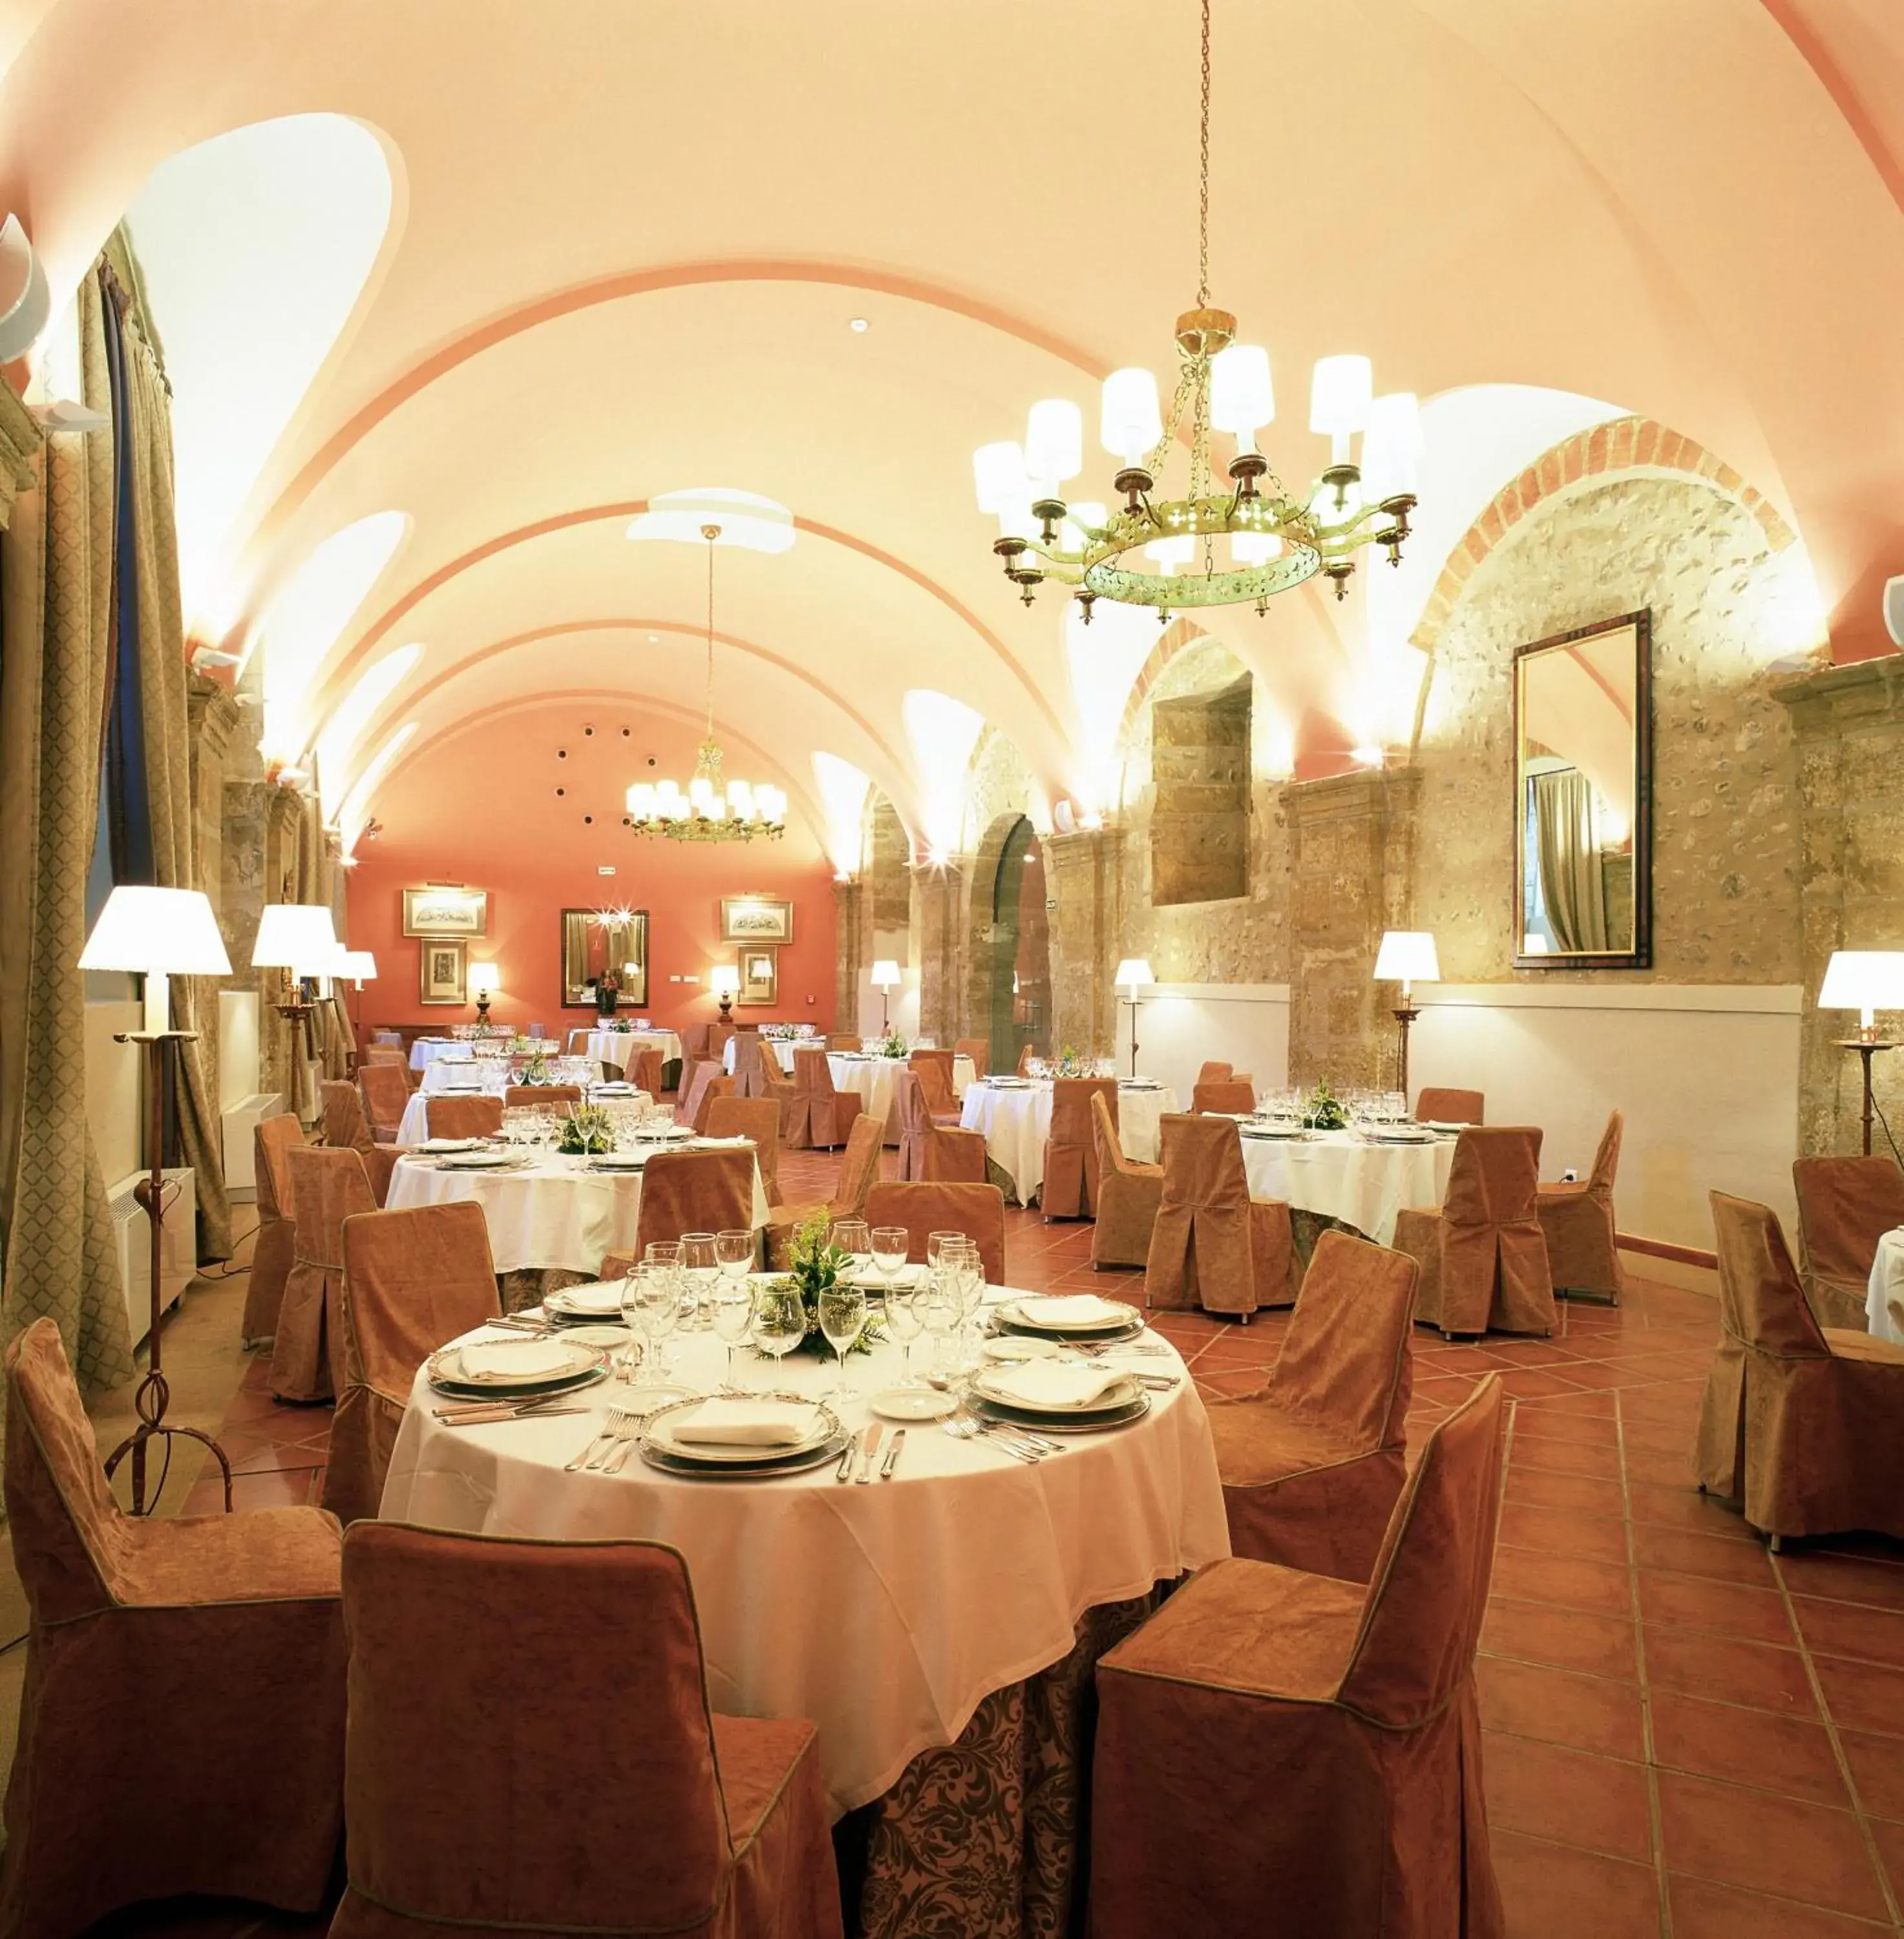 Banquet/Function facilities, Banquet Facilities in Parador de Santo Domingo Bernardo de Fresneda